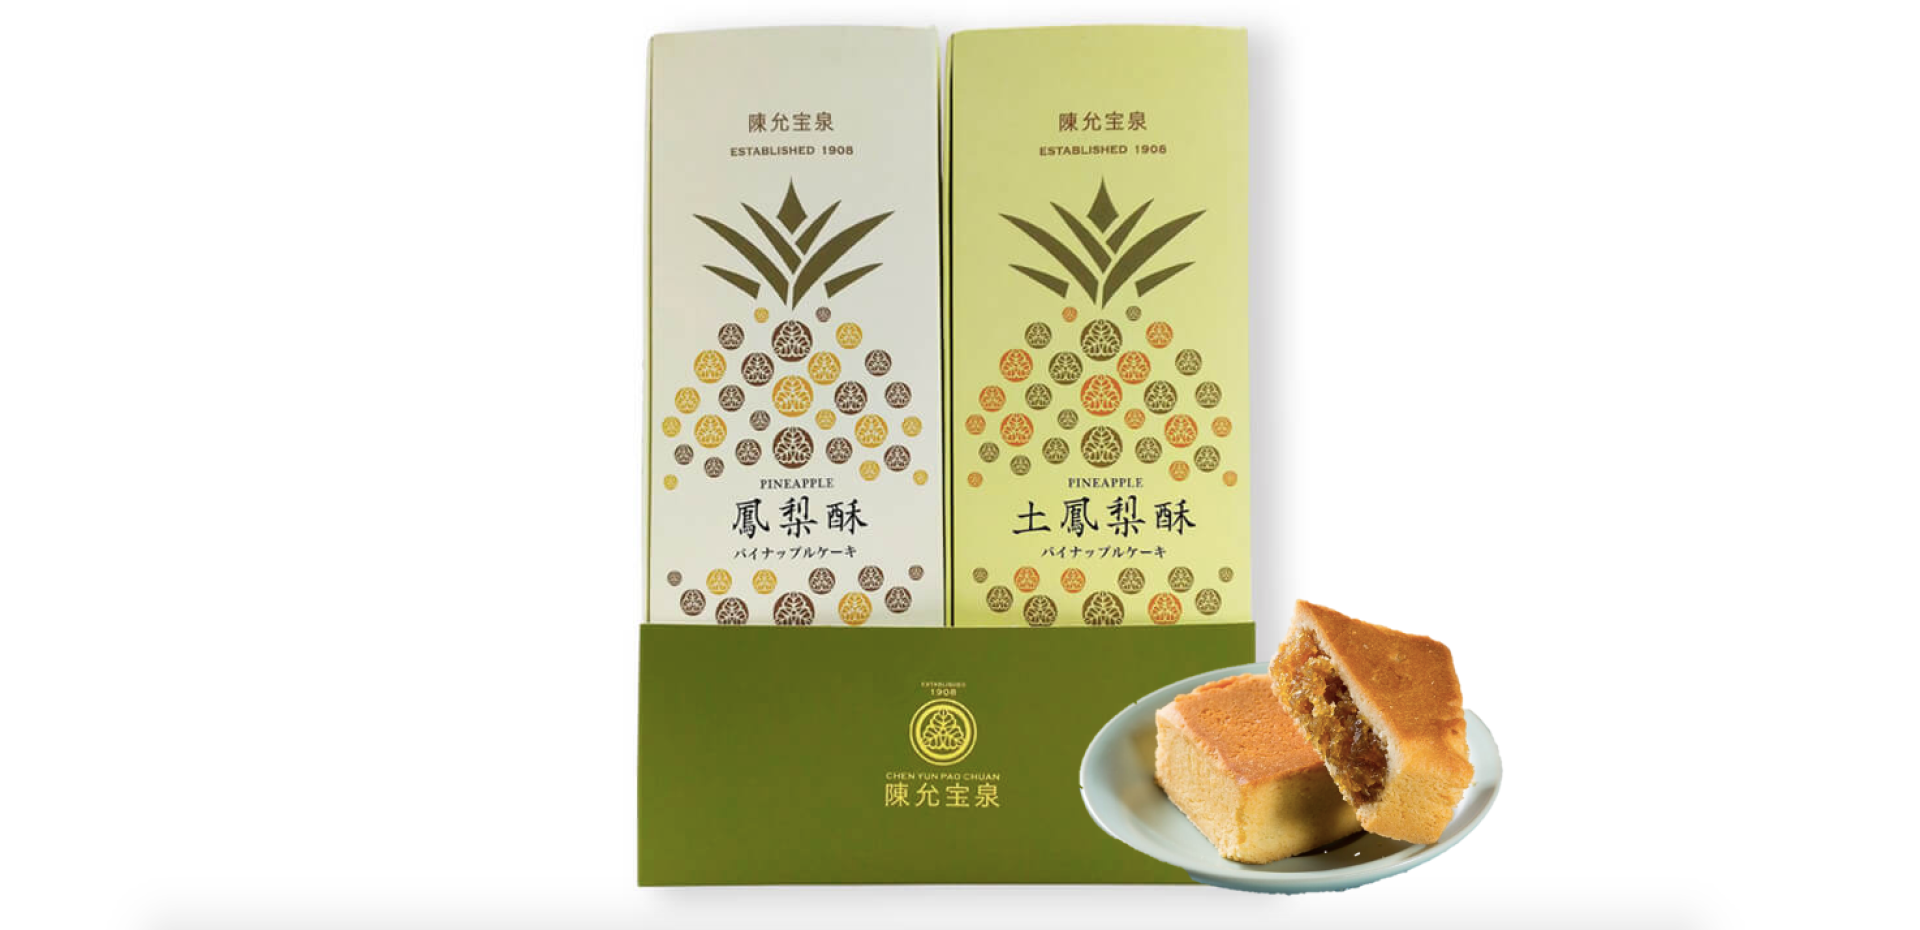  日本で台湾気分｜陳允宝泉 - パイナップルケーキ食べ比べセット| 日本国内配送 | 送料無料 